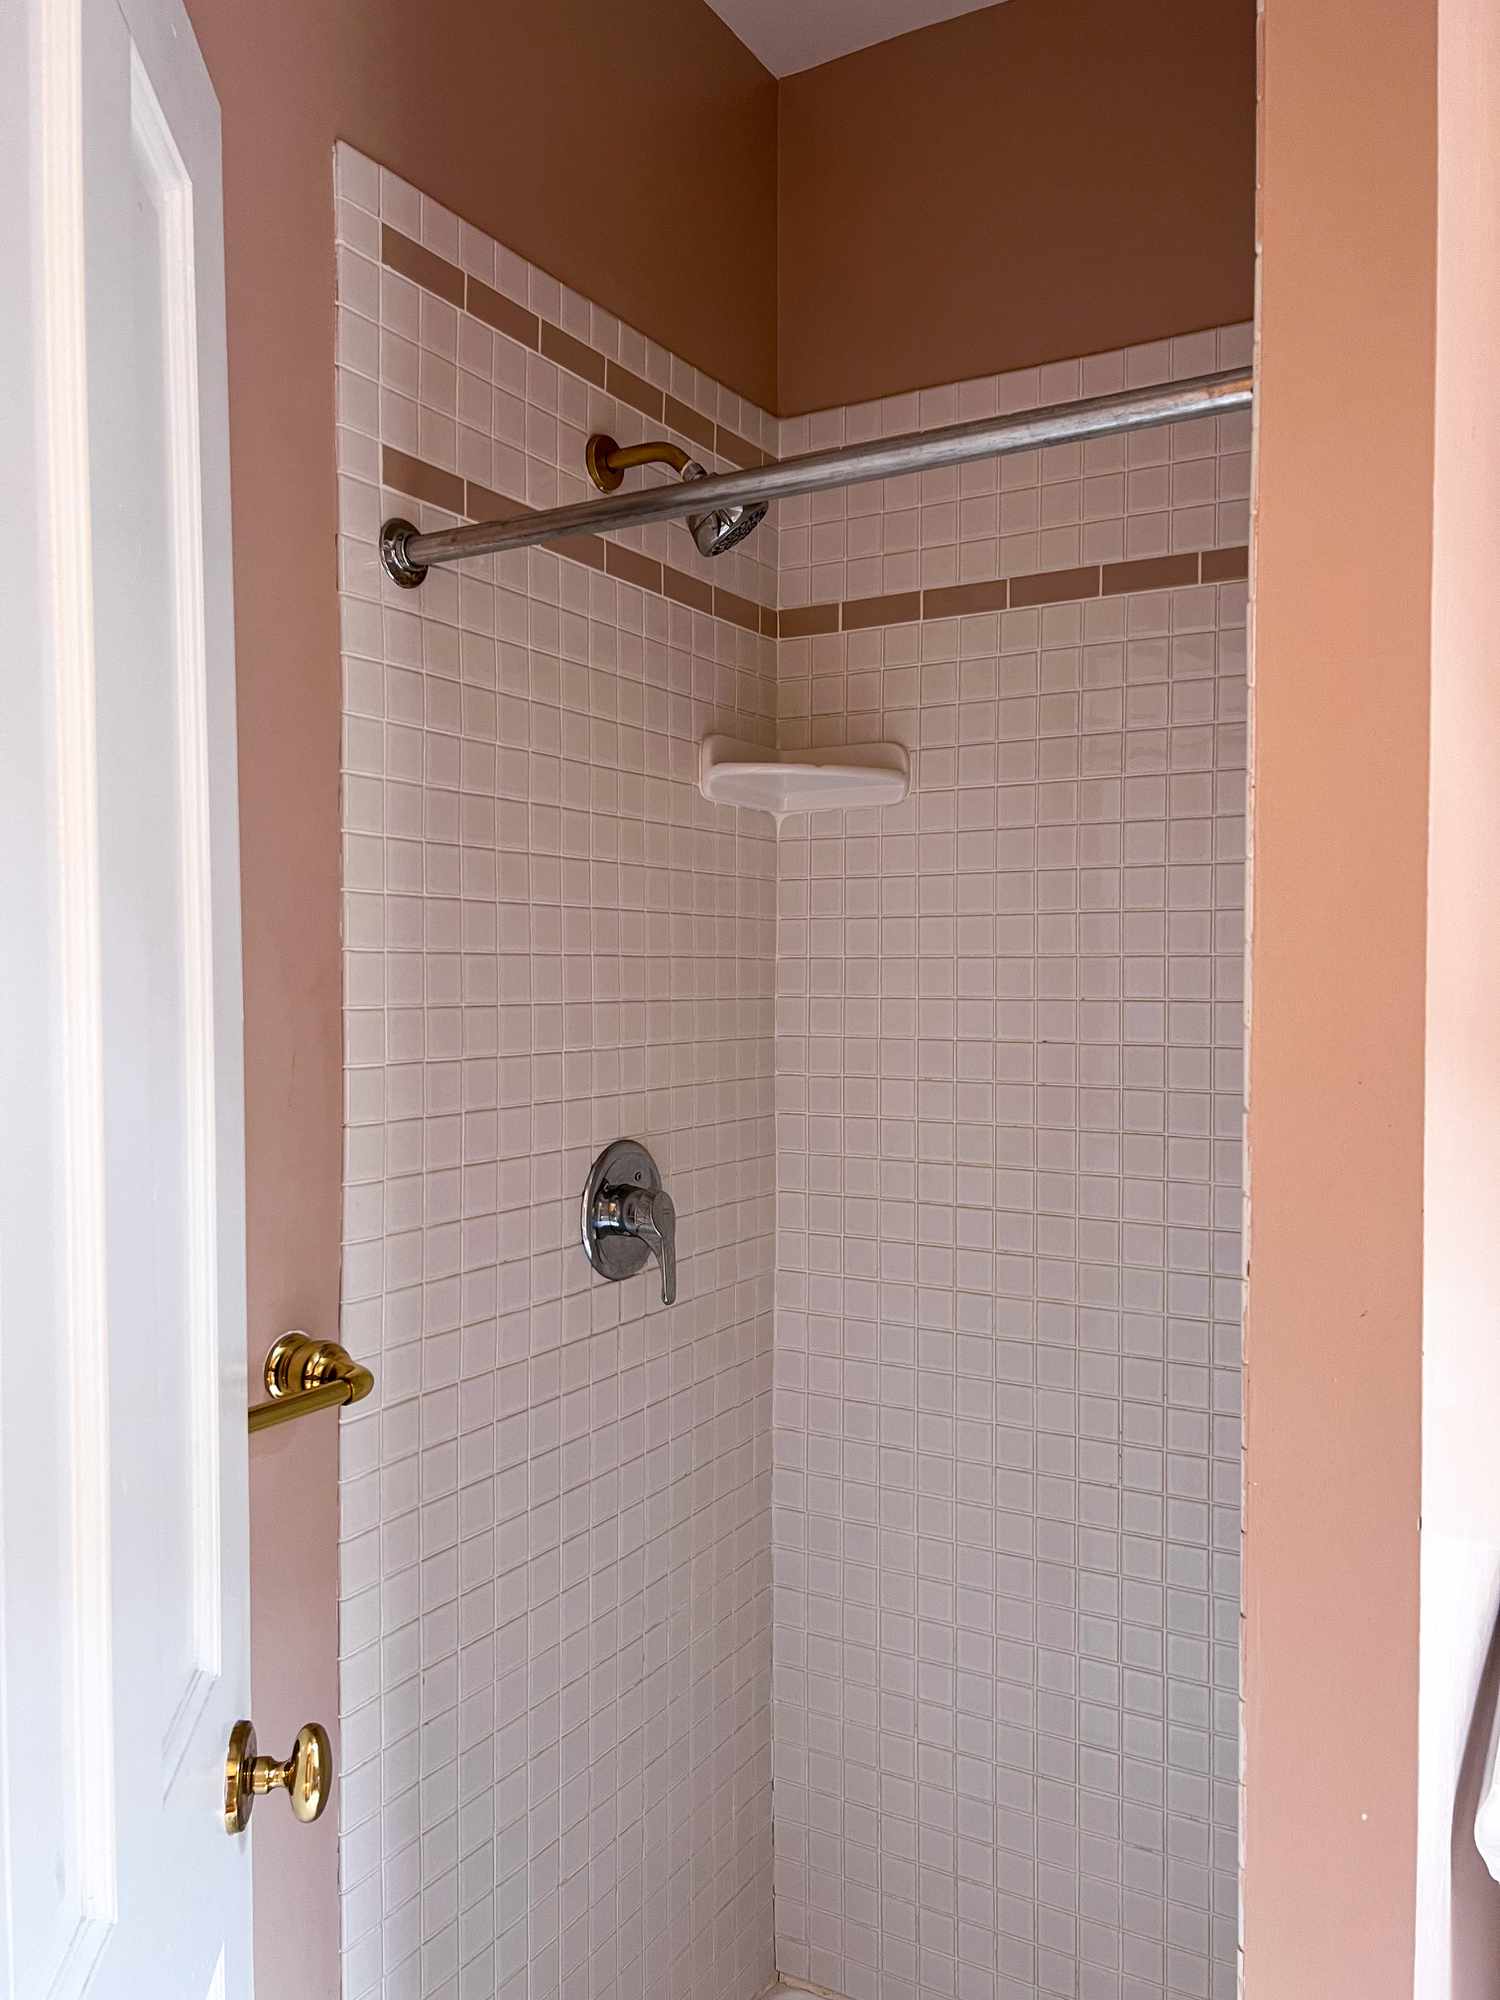 Banheiro rosa com azulejos lilás